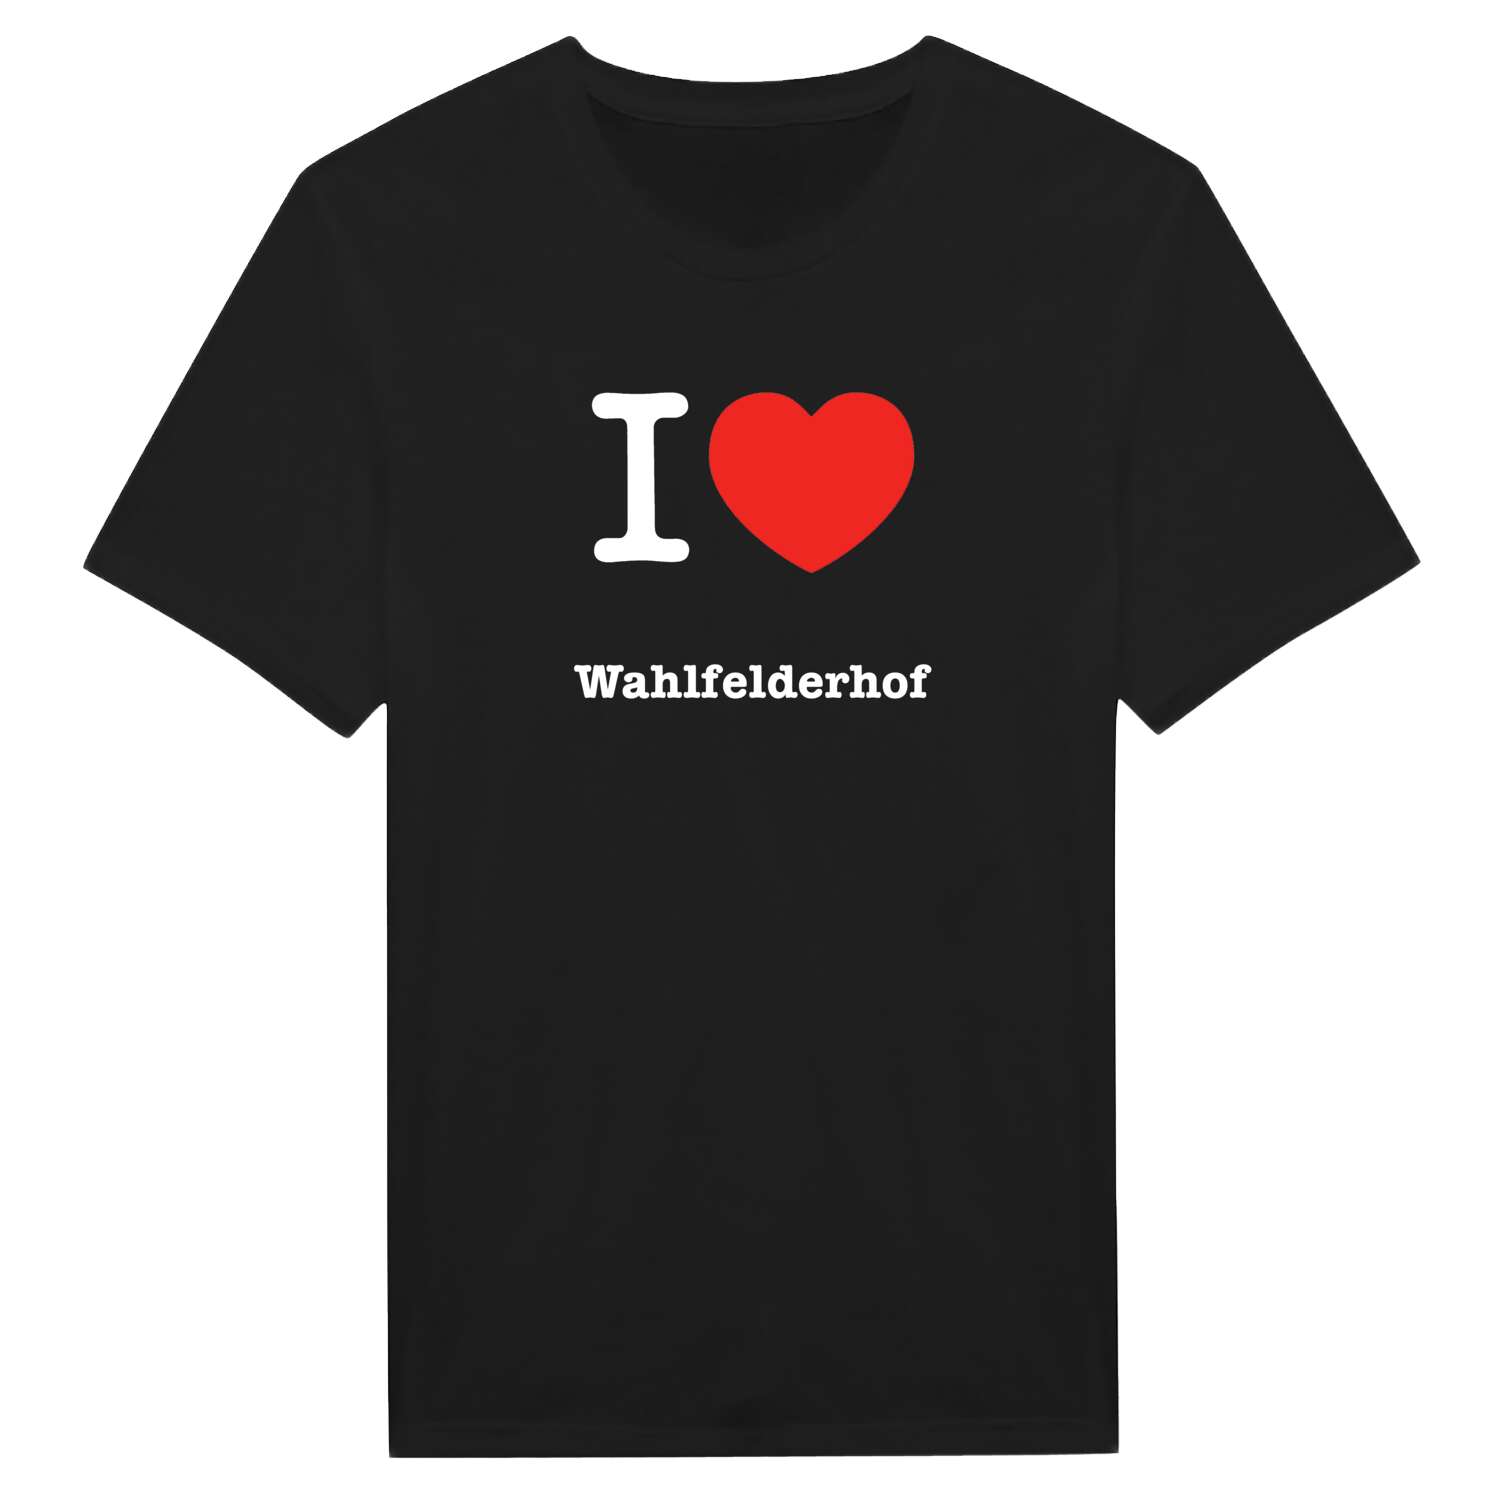 Wahlfelderhof T-Shirt »I love«